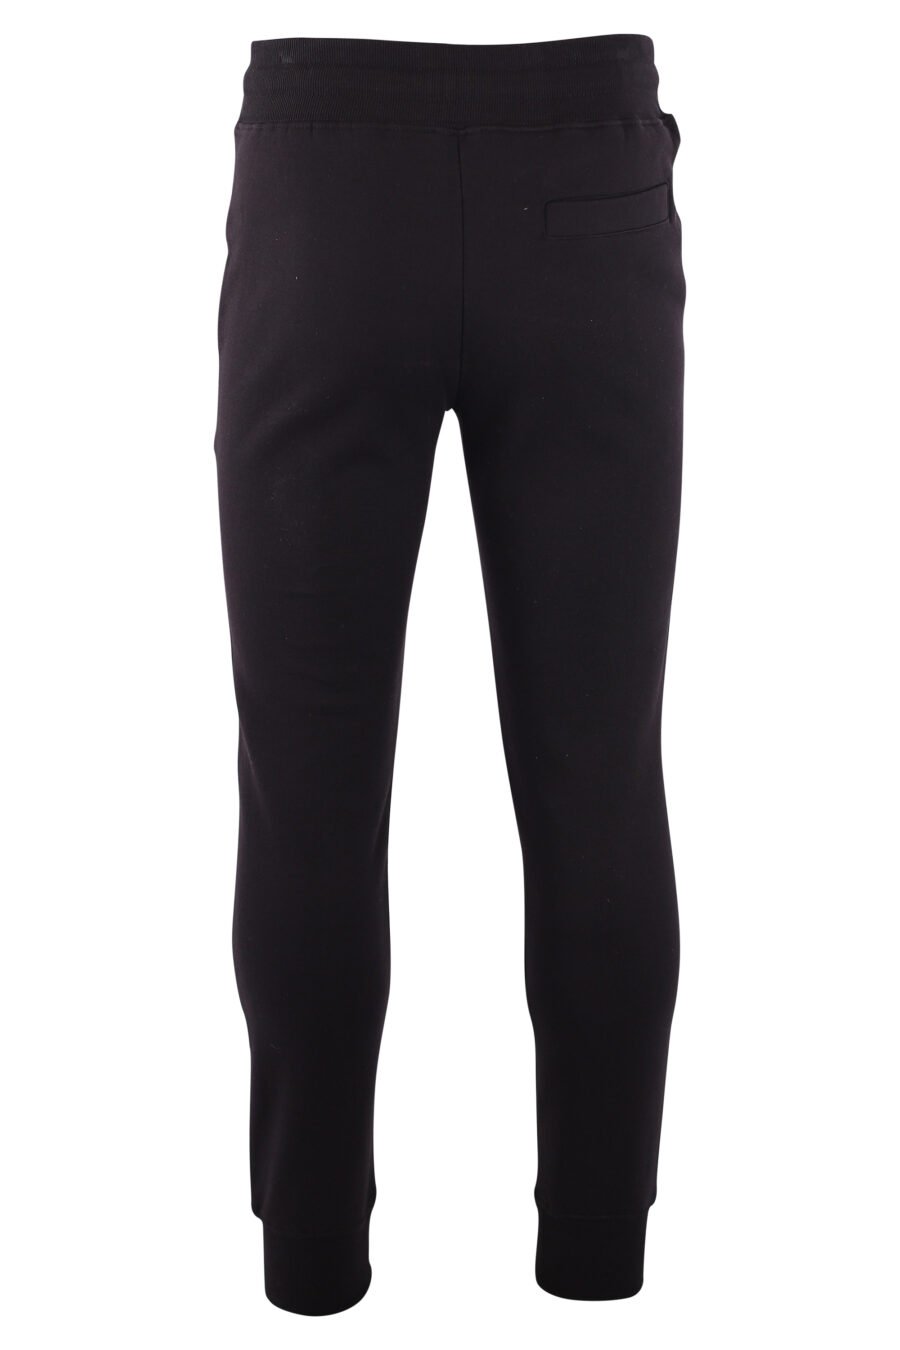 Pantalón de chándal negro con logo redondo plateado - IMG 3219